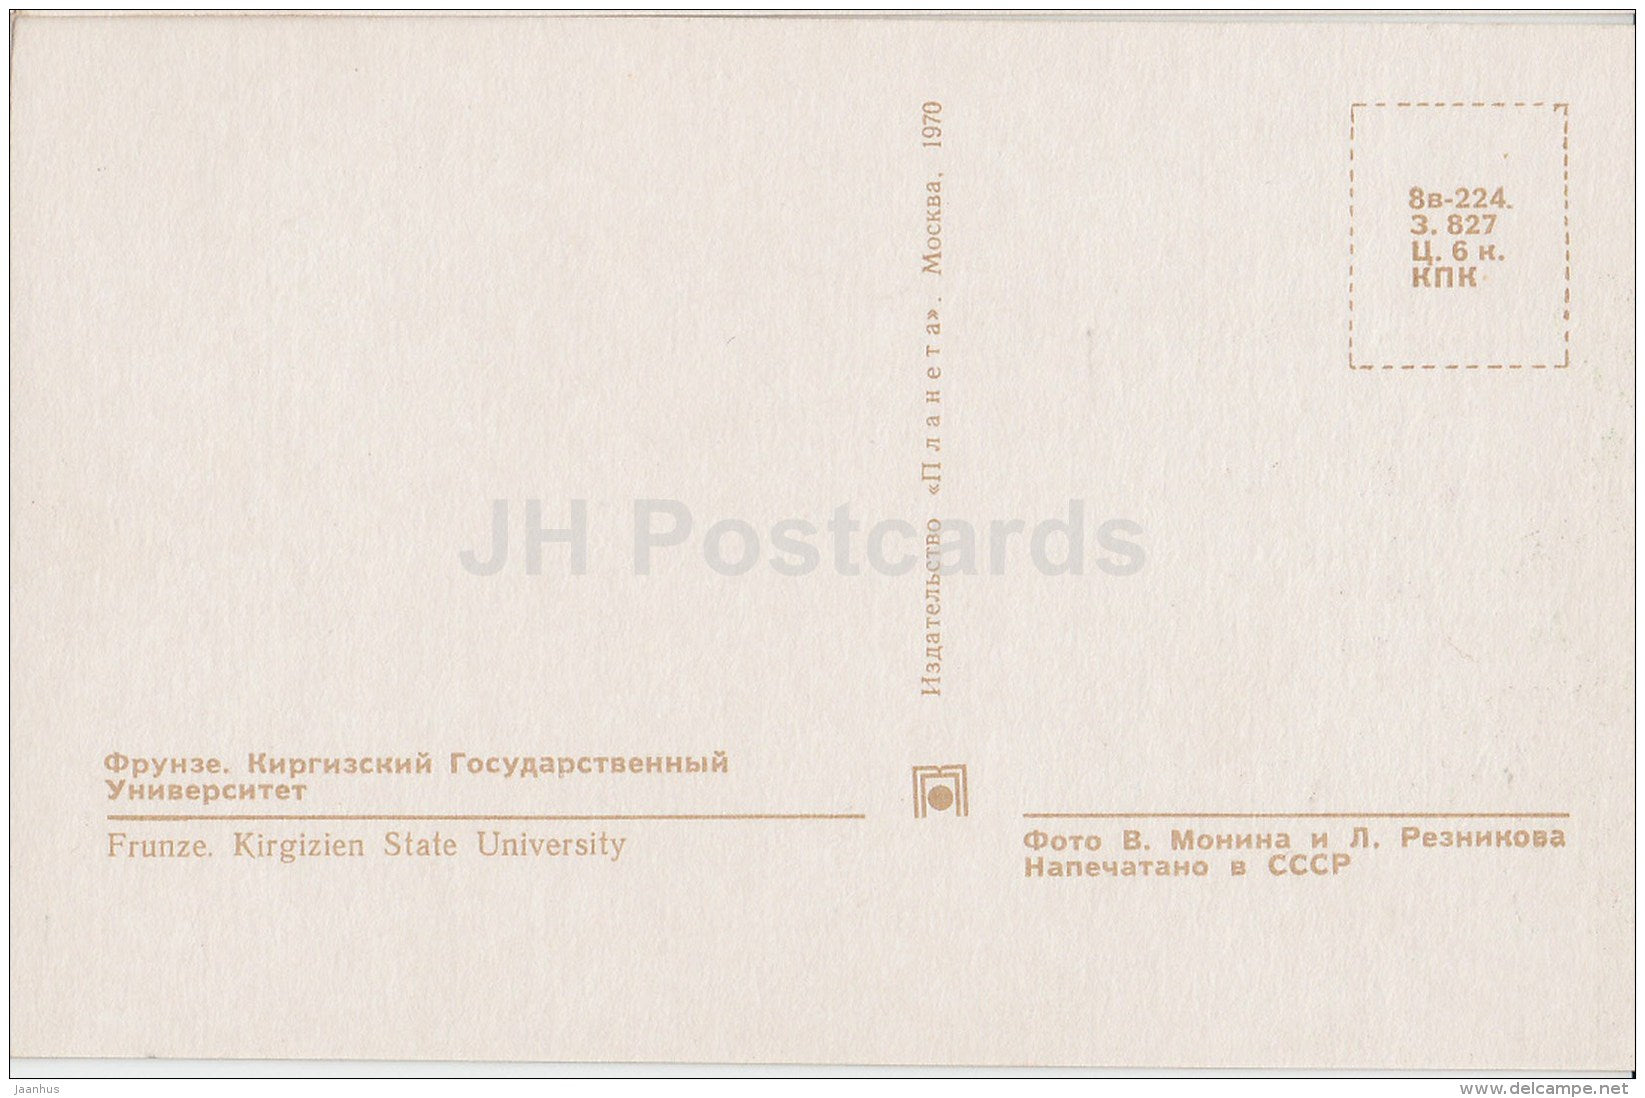 Kyrgyz State University - Bishkek - Frunze - 1970 - Kyrgystan USSR - unused - JH Postcards